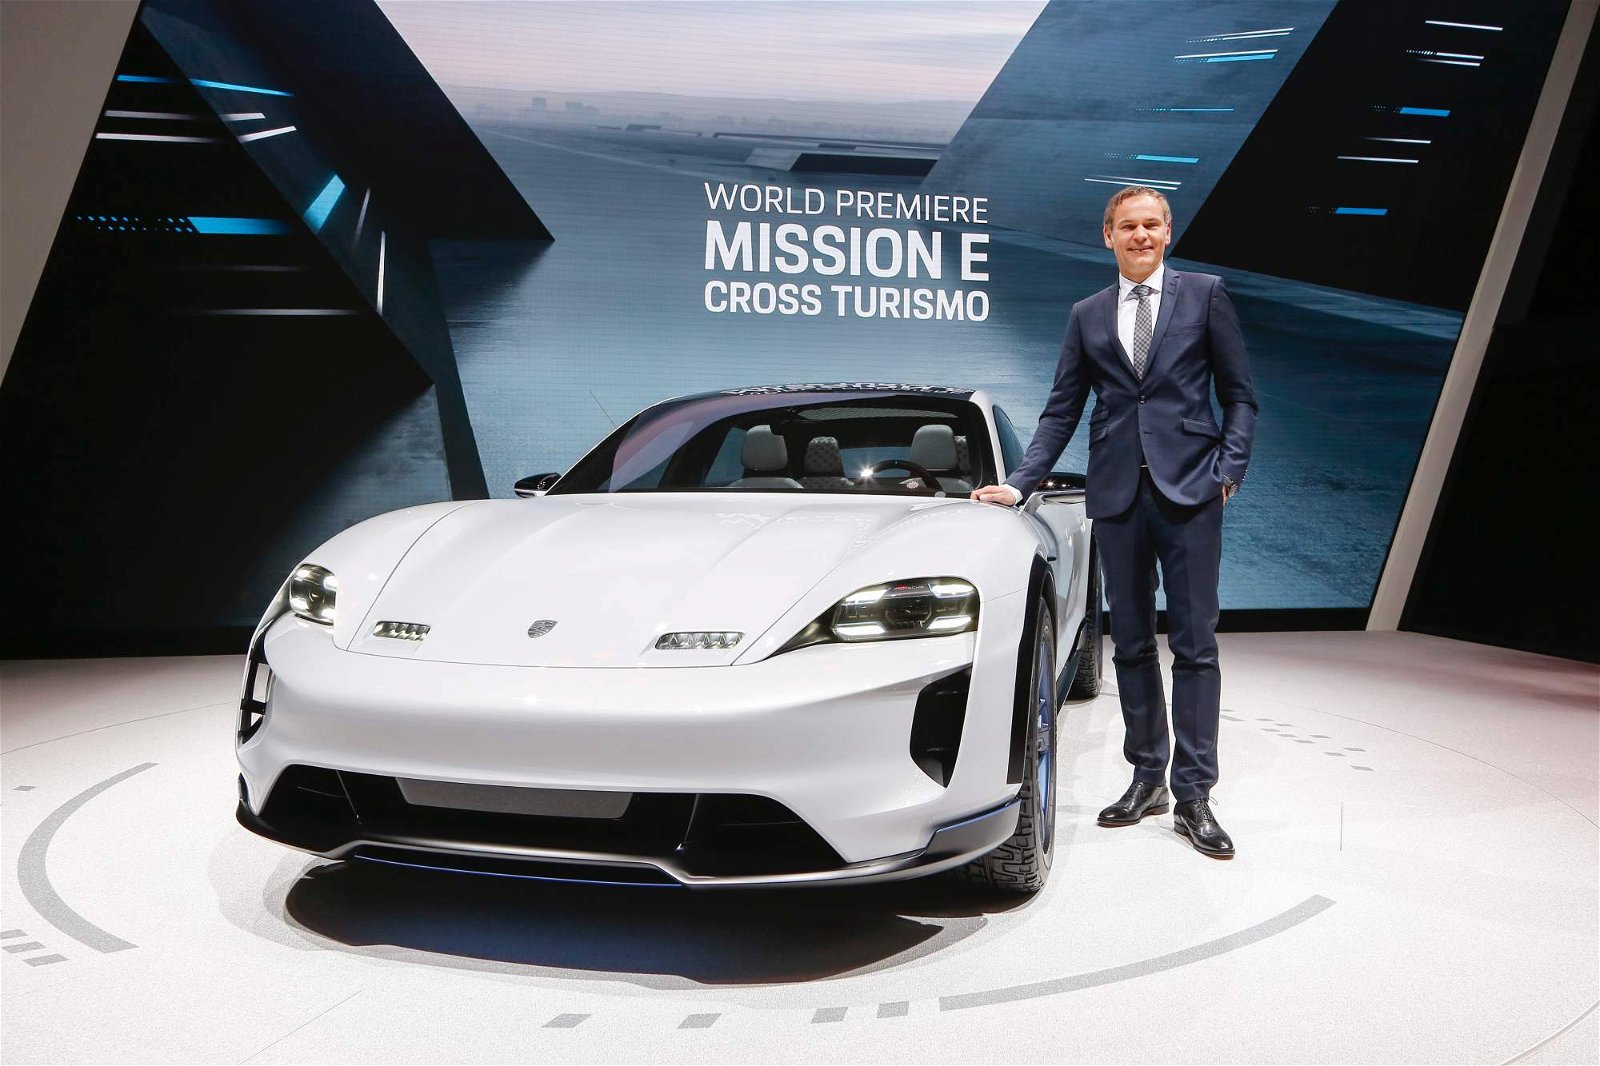 Porsche-Mission-E-Cross-Turismo-Concept-at-Geneva-Motor-Show-5